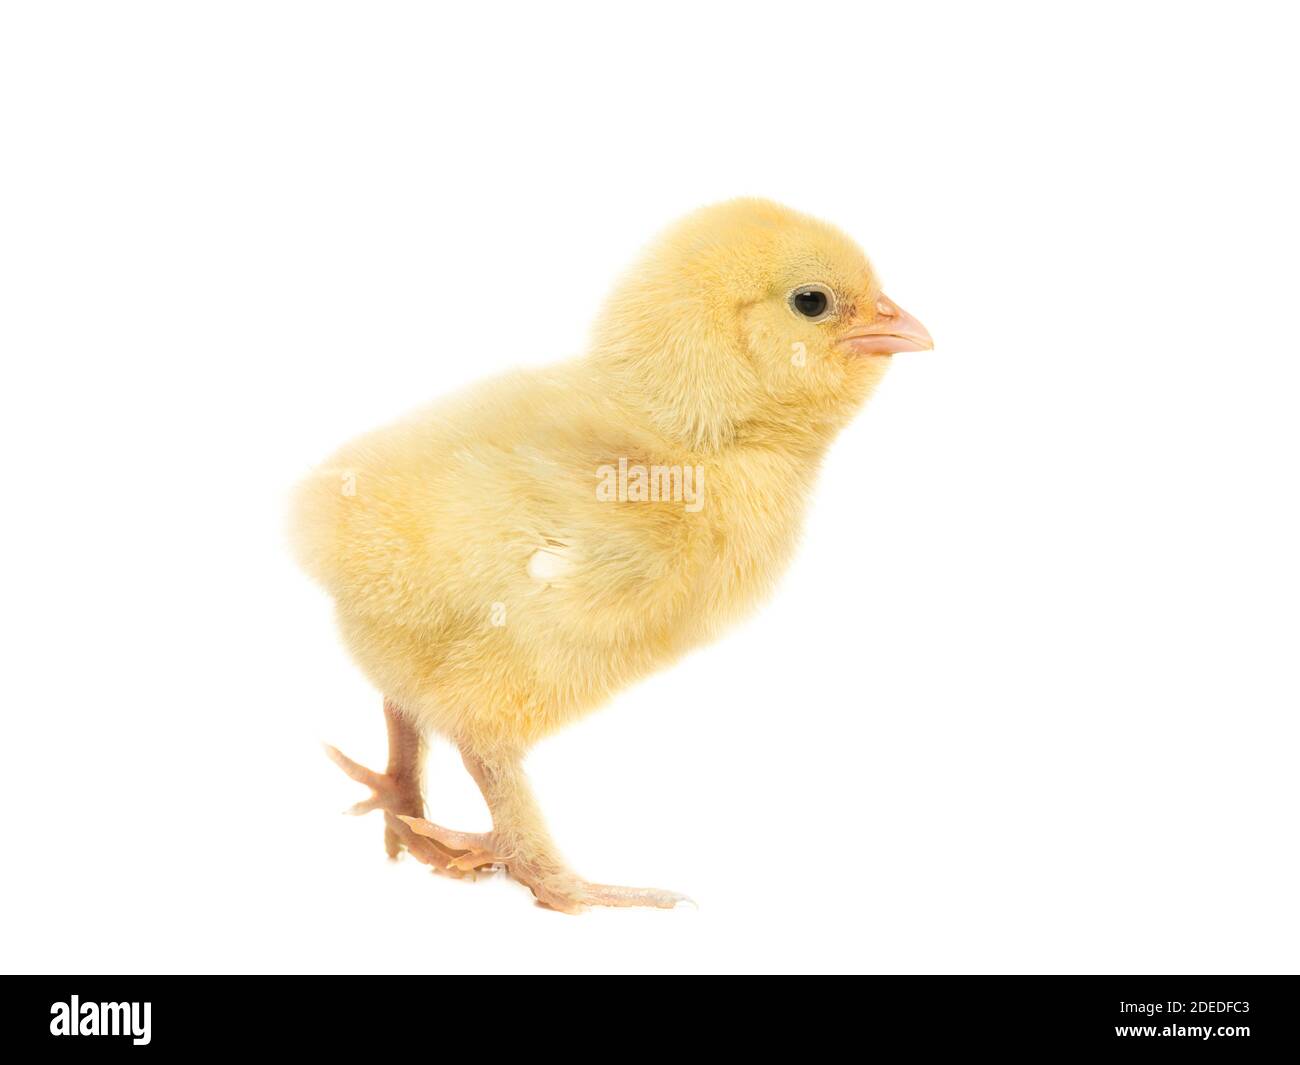 Carino giallo pollo giovane visto dal lato isolato su uno sfondo bianco Foto Stock